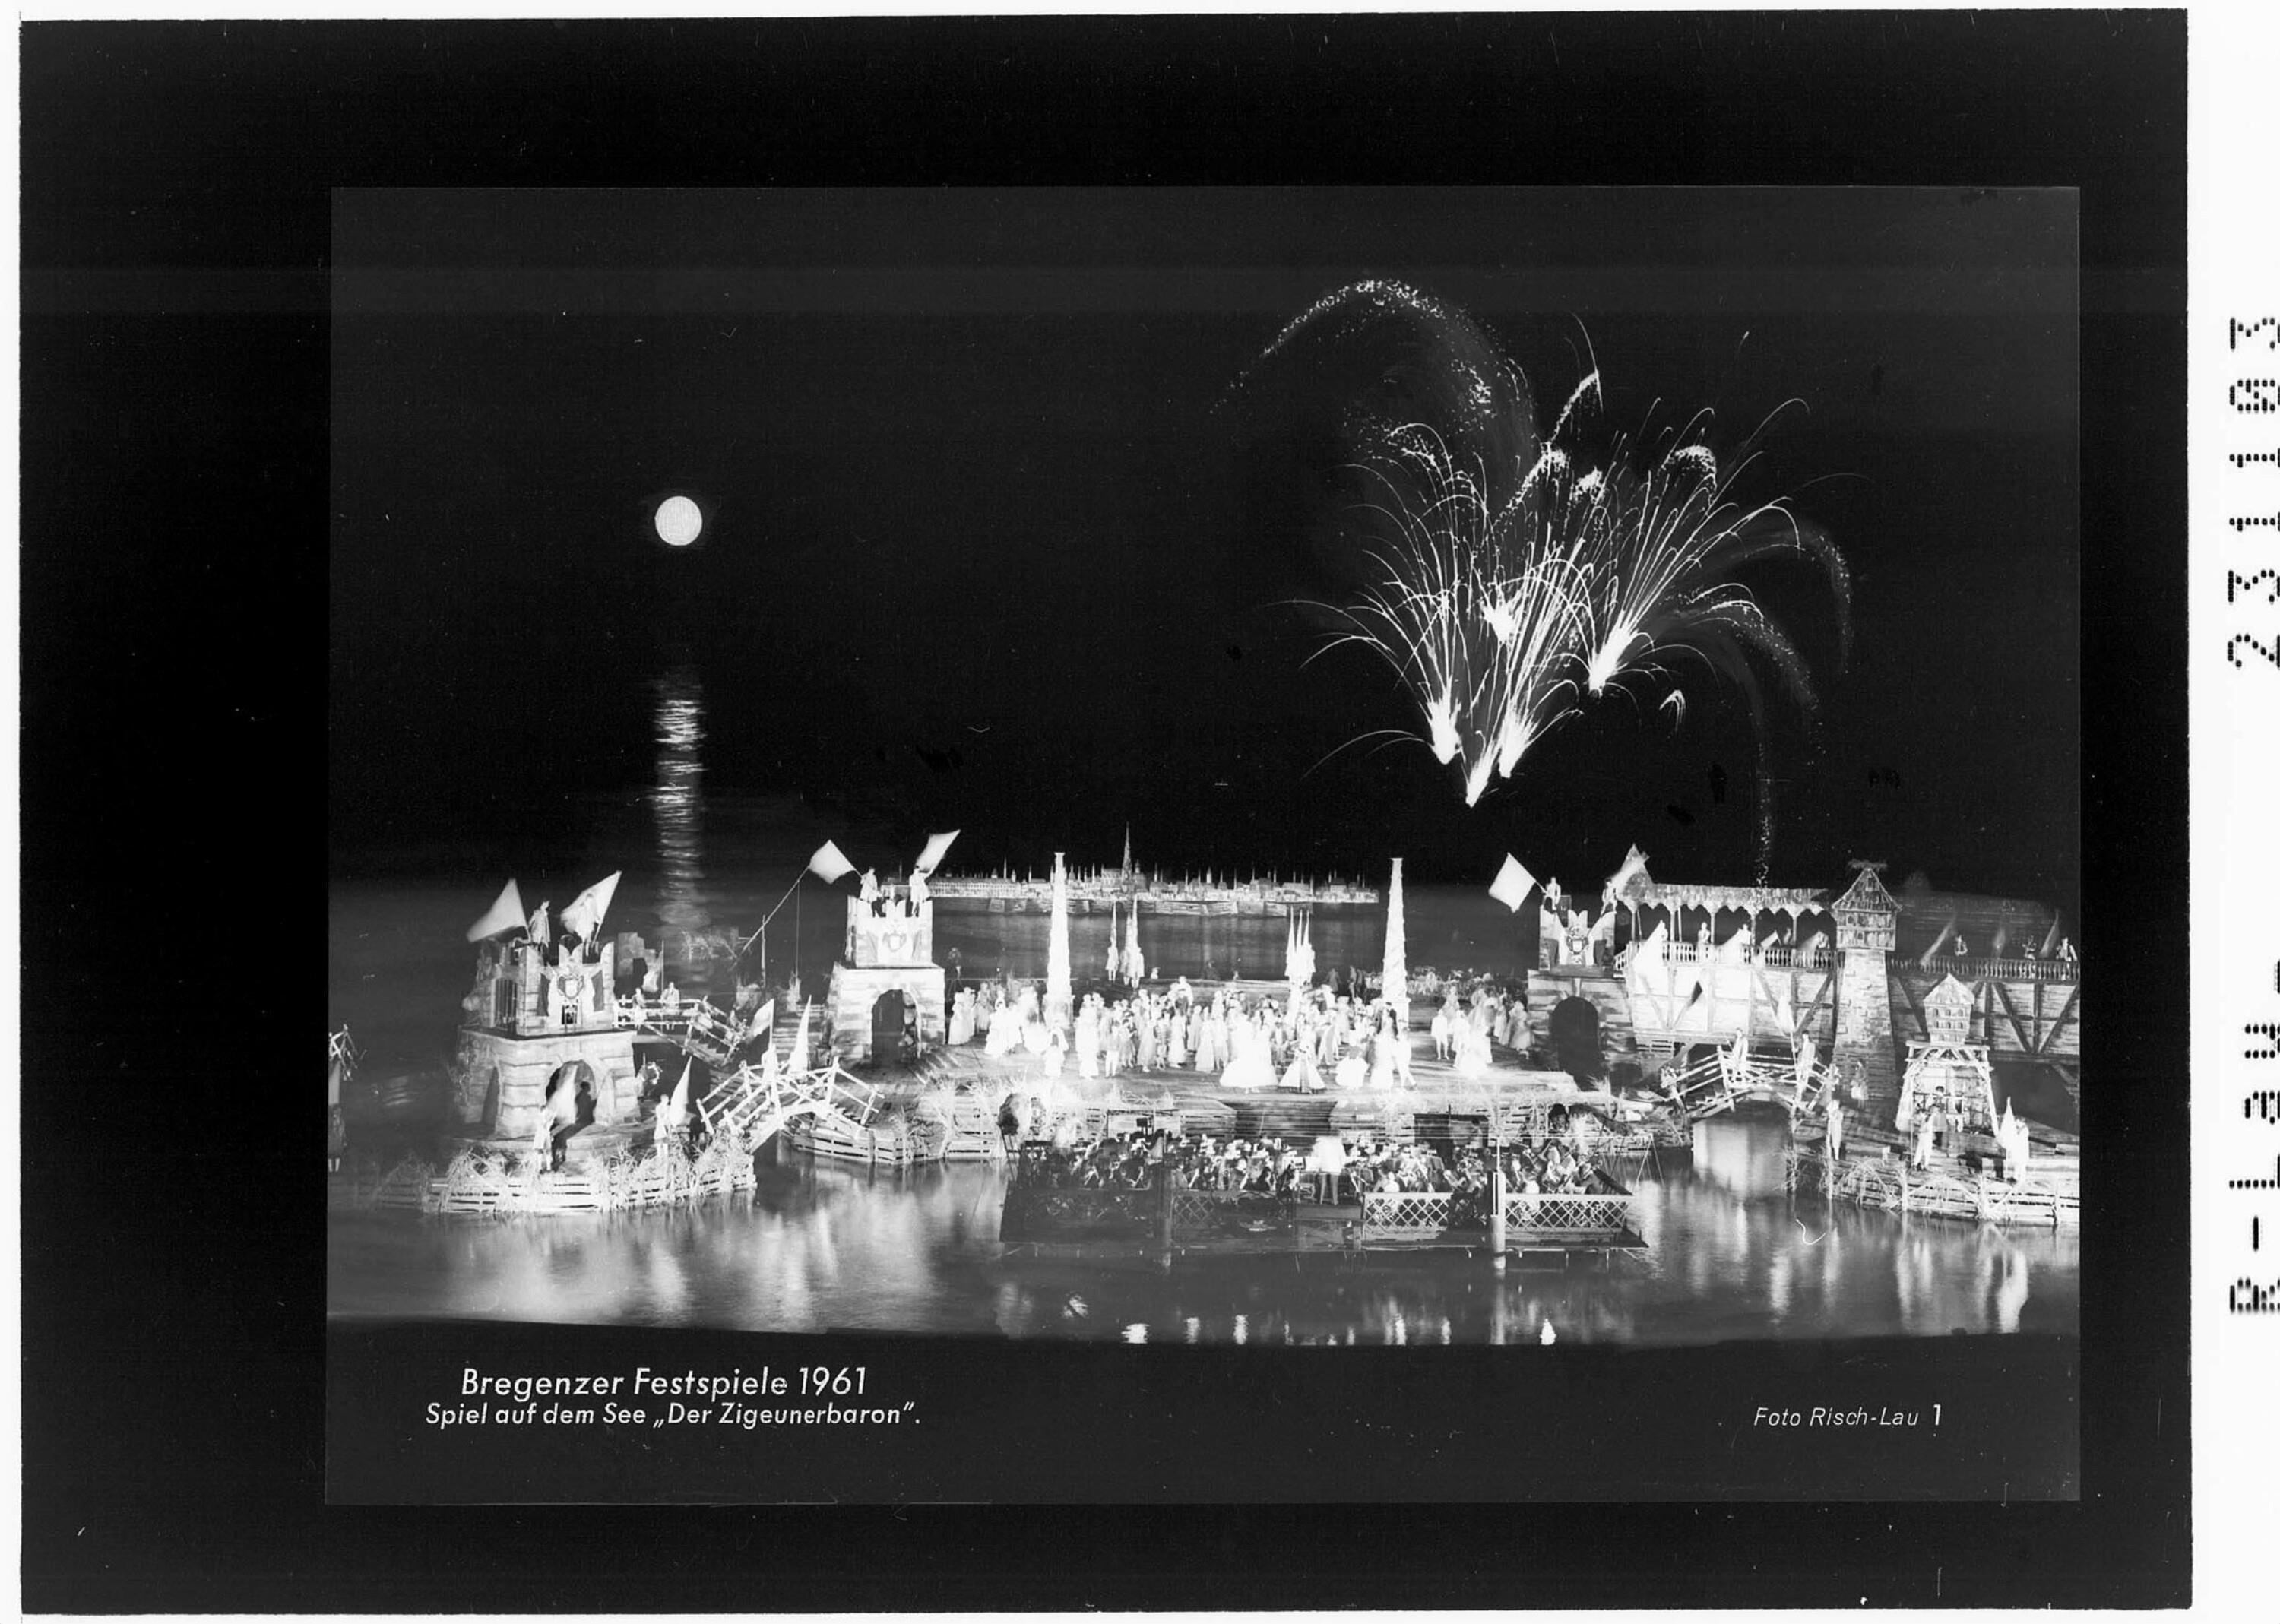 Bregenzer Festspiele 1961 / Spiel auf dem See - Der Zigeunerbaron></div>


    <hr>
    <div class=